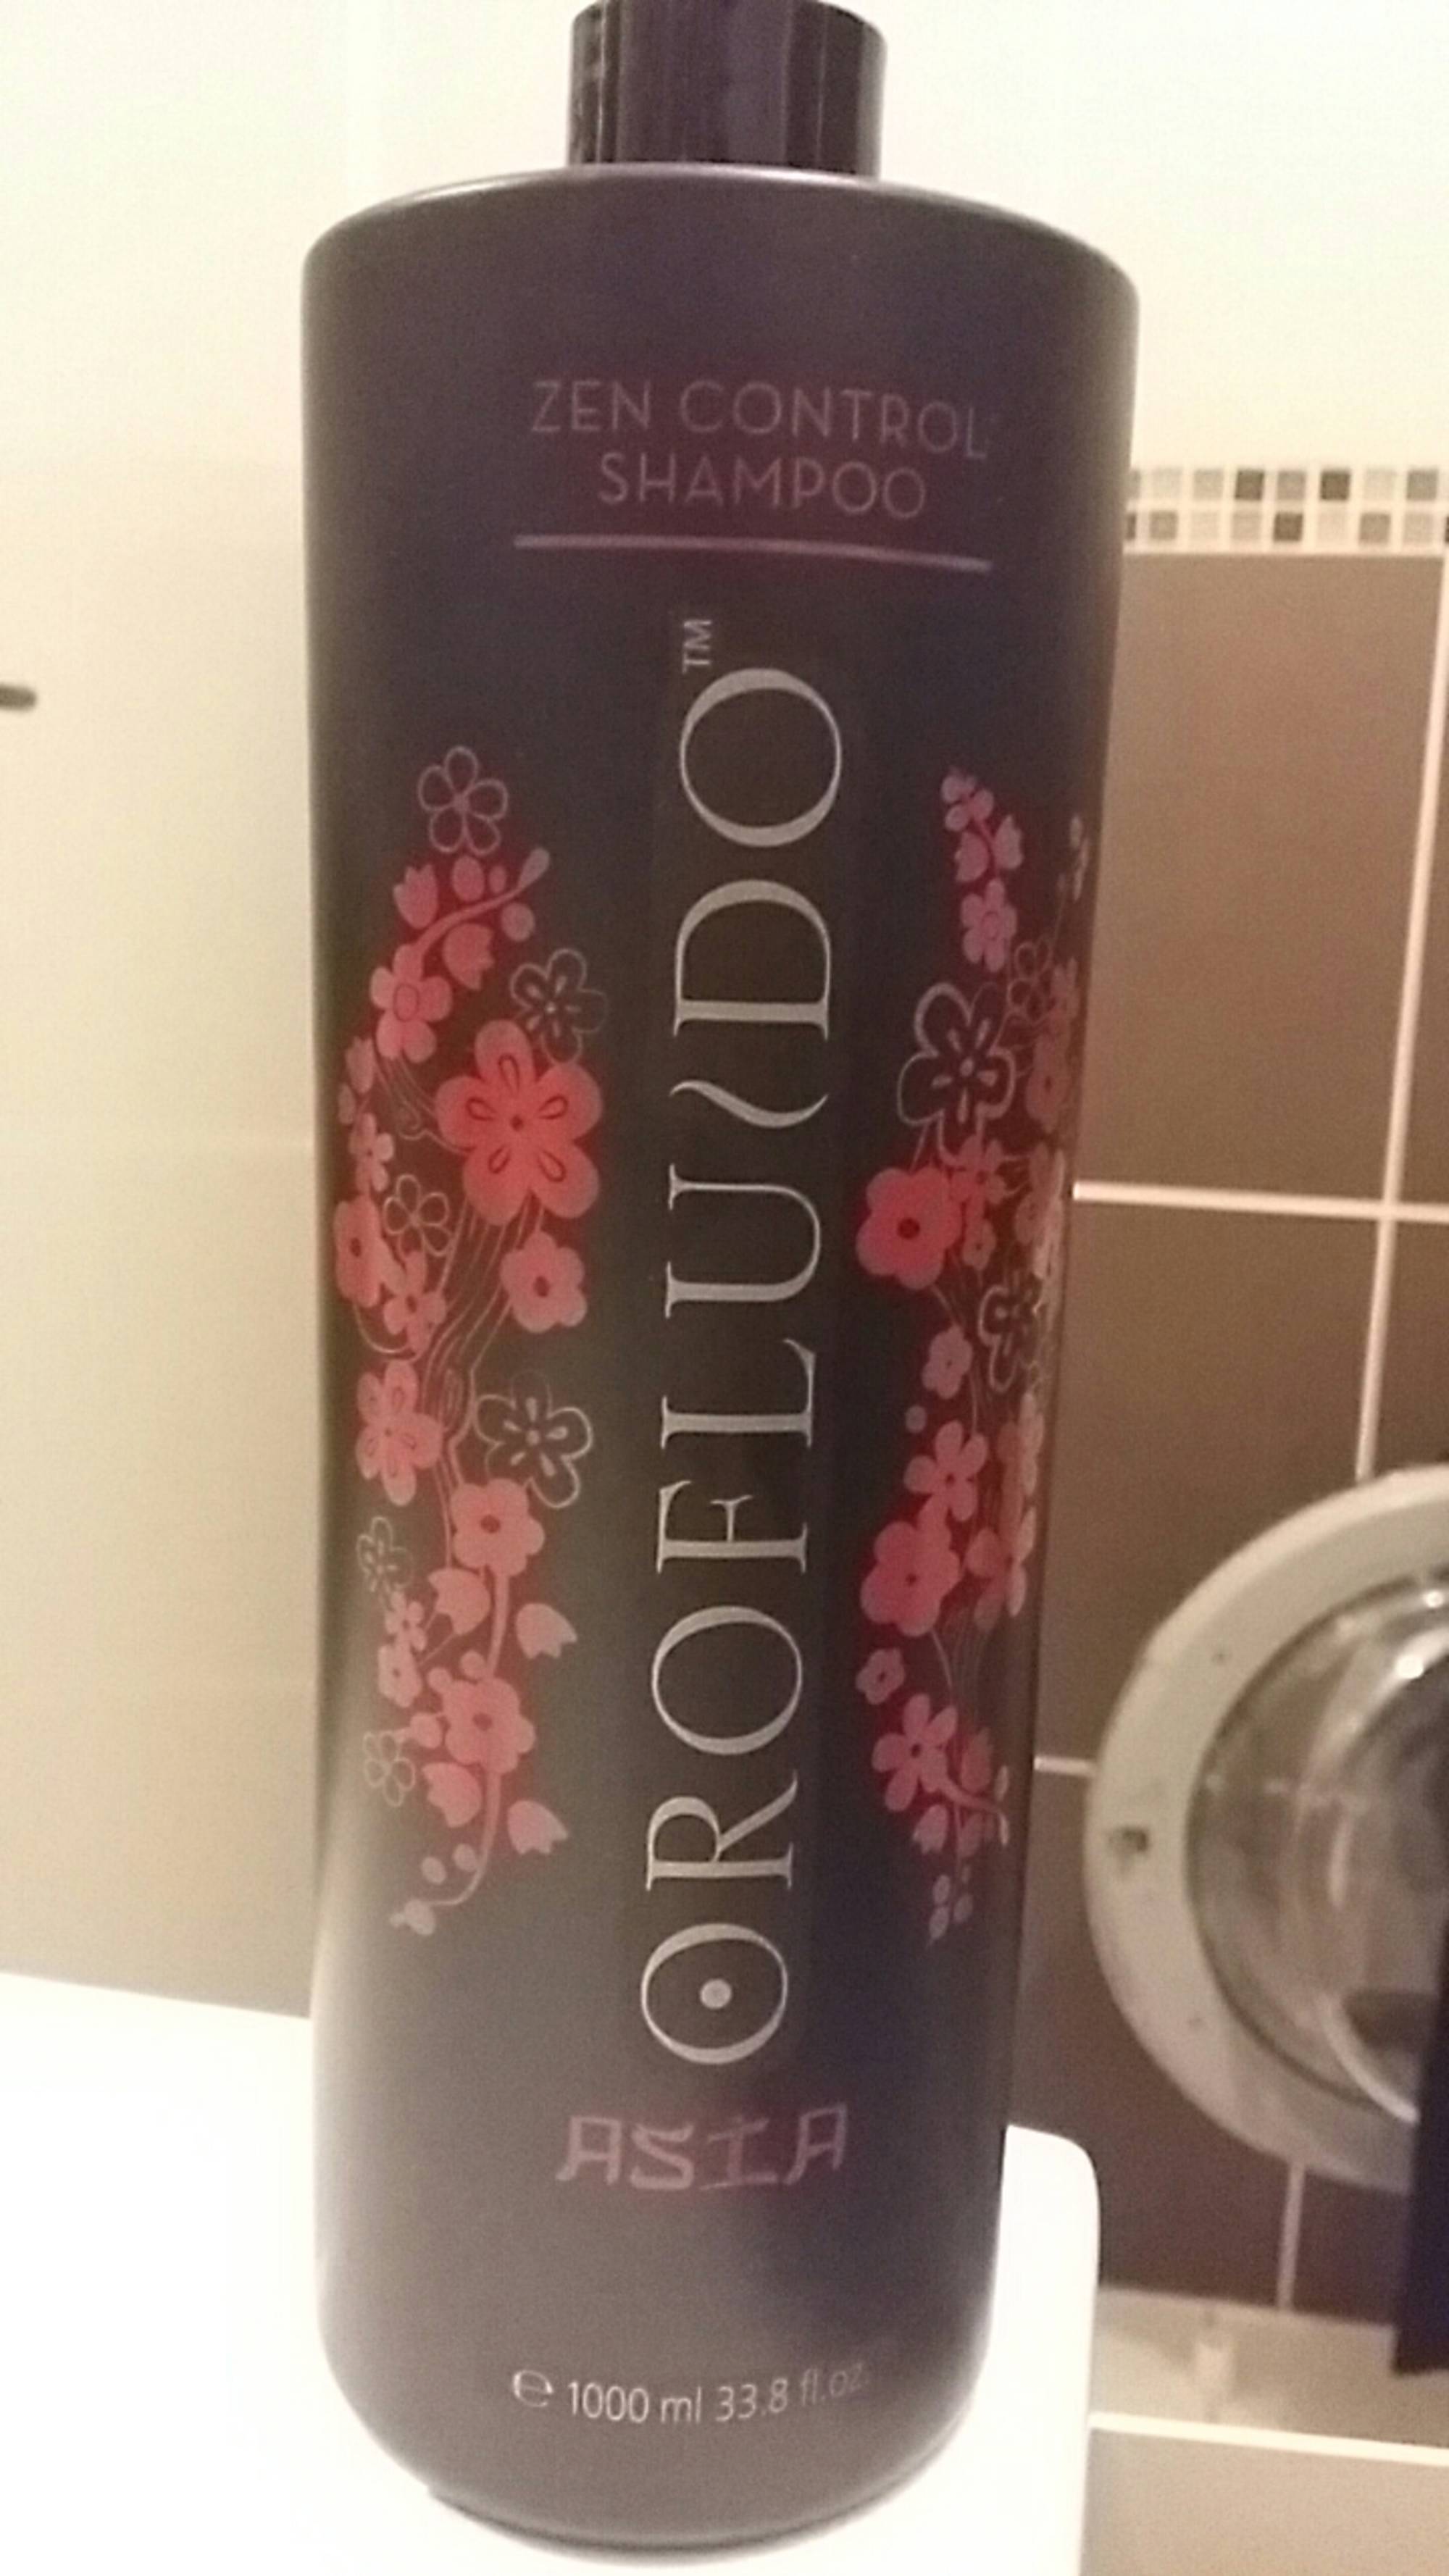 OROFLUIDO - Asia - Zen control shampoo